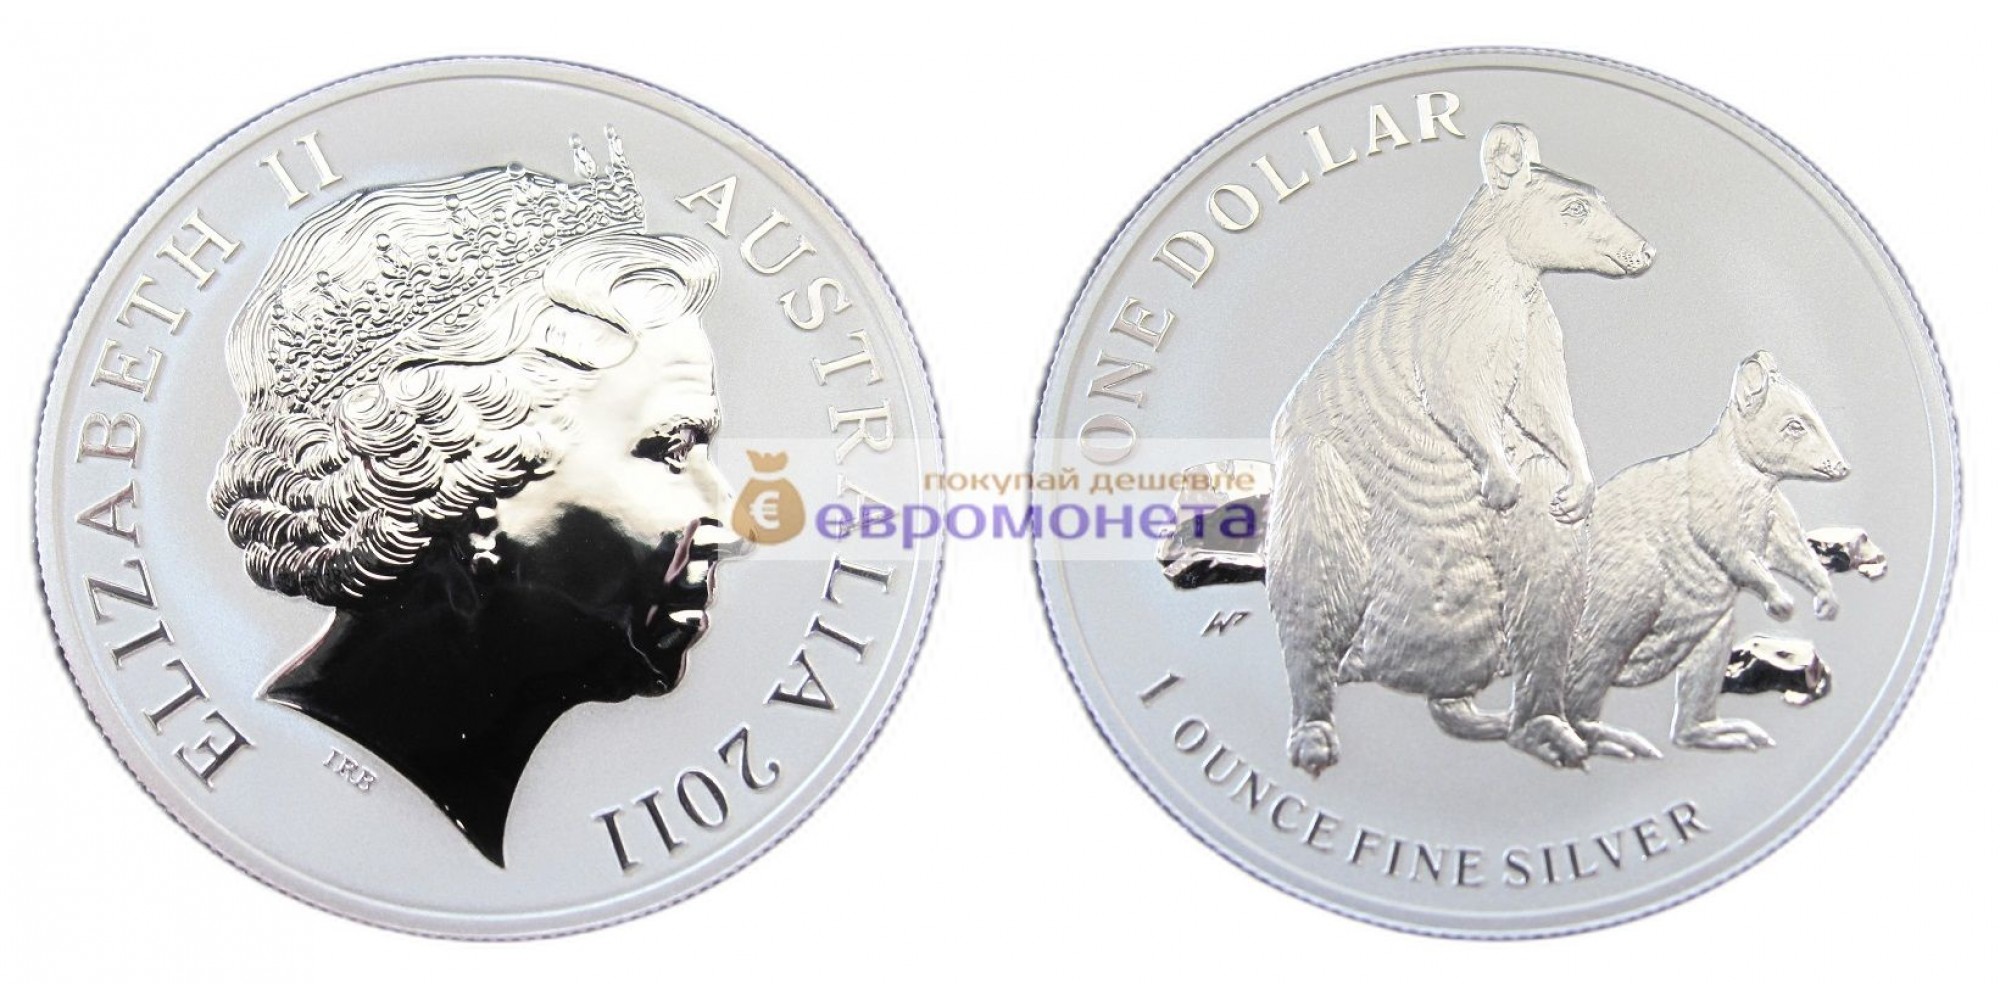 Австралия 1 доллар 2011 год Кенгуру с малышом /матовое поле монеты/. Серебро. пруф / proof